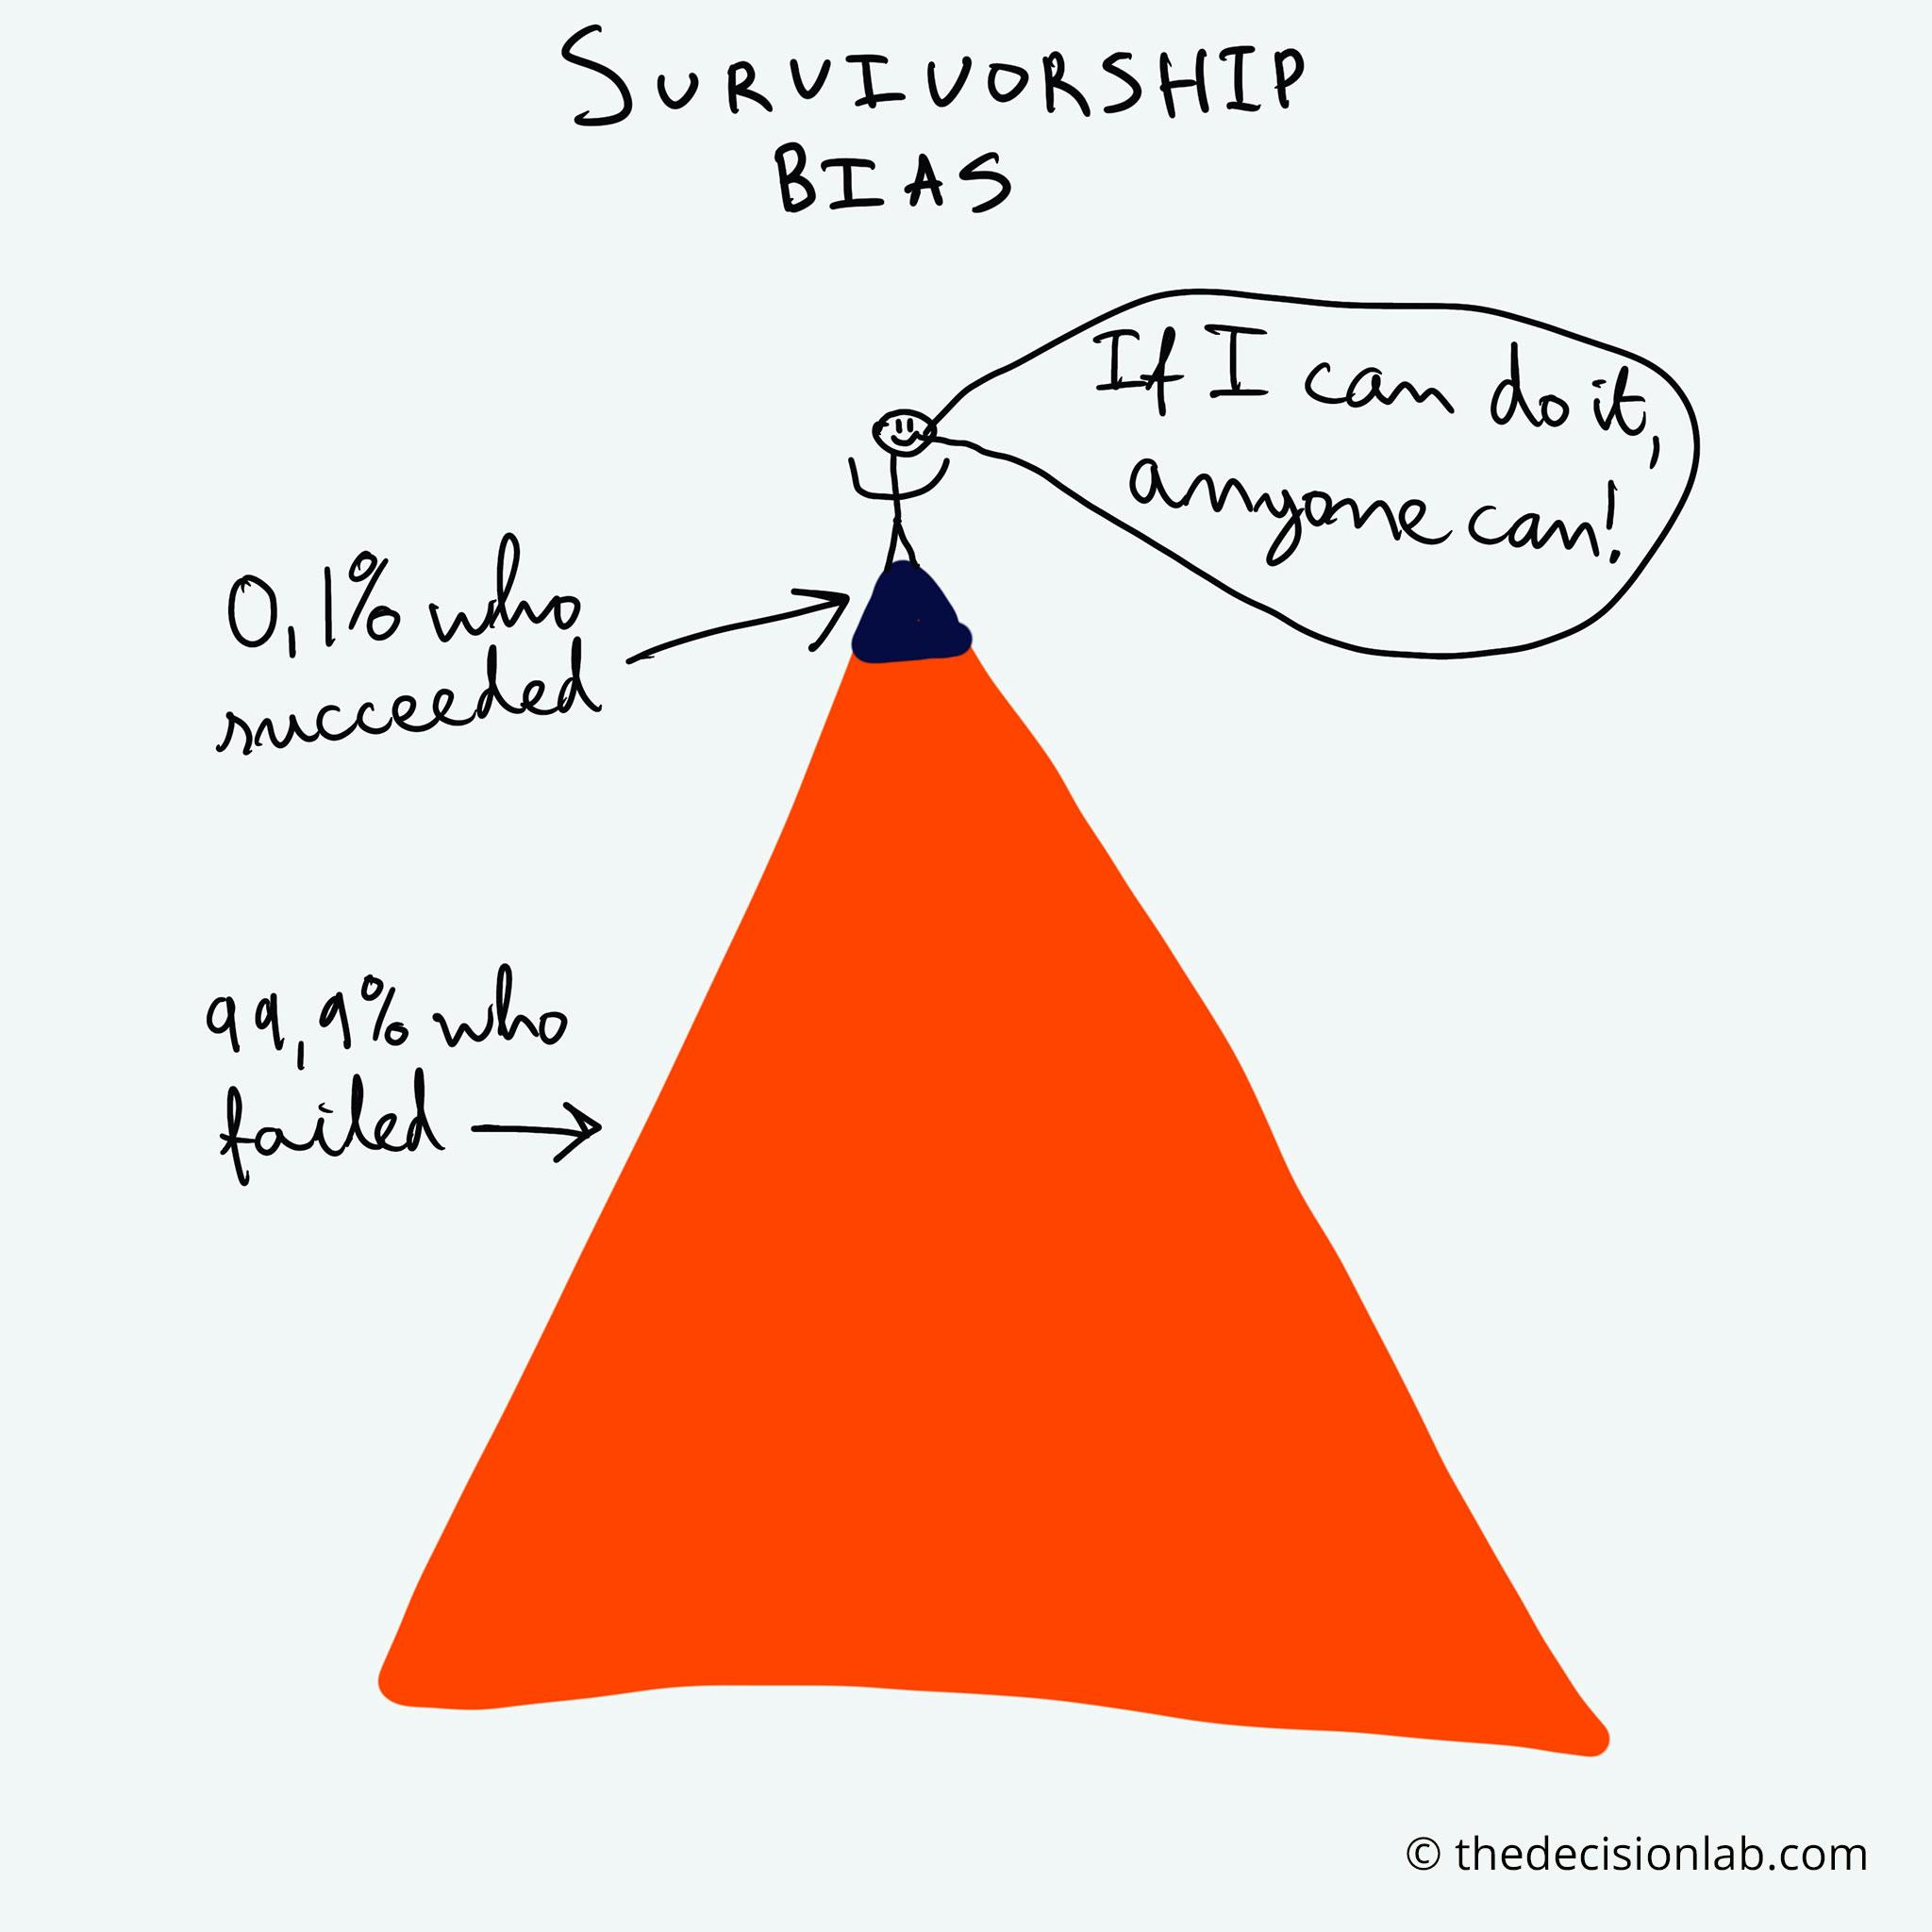 You are missing something! - Survivorship bias 